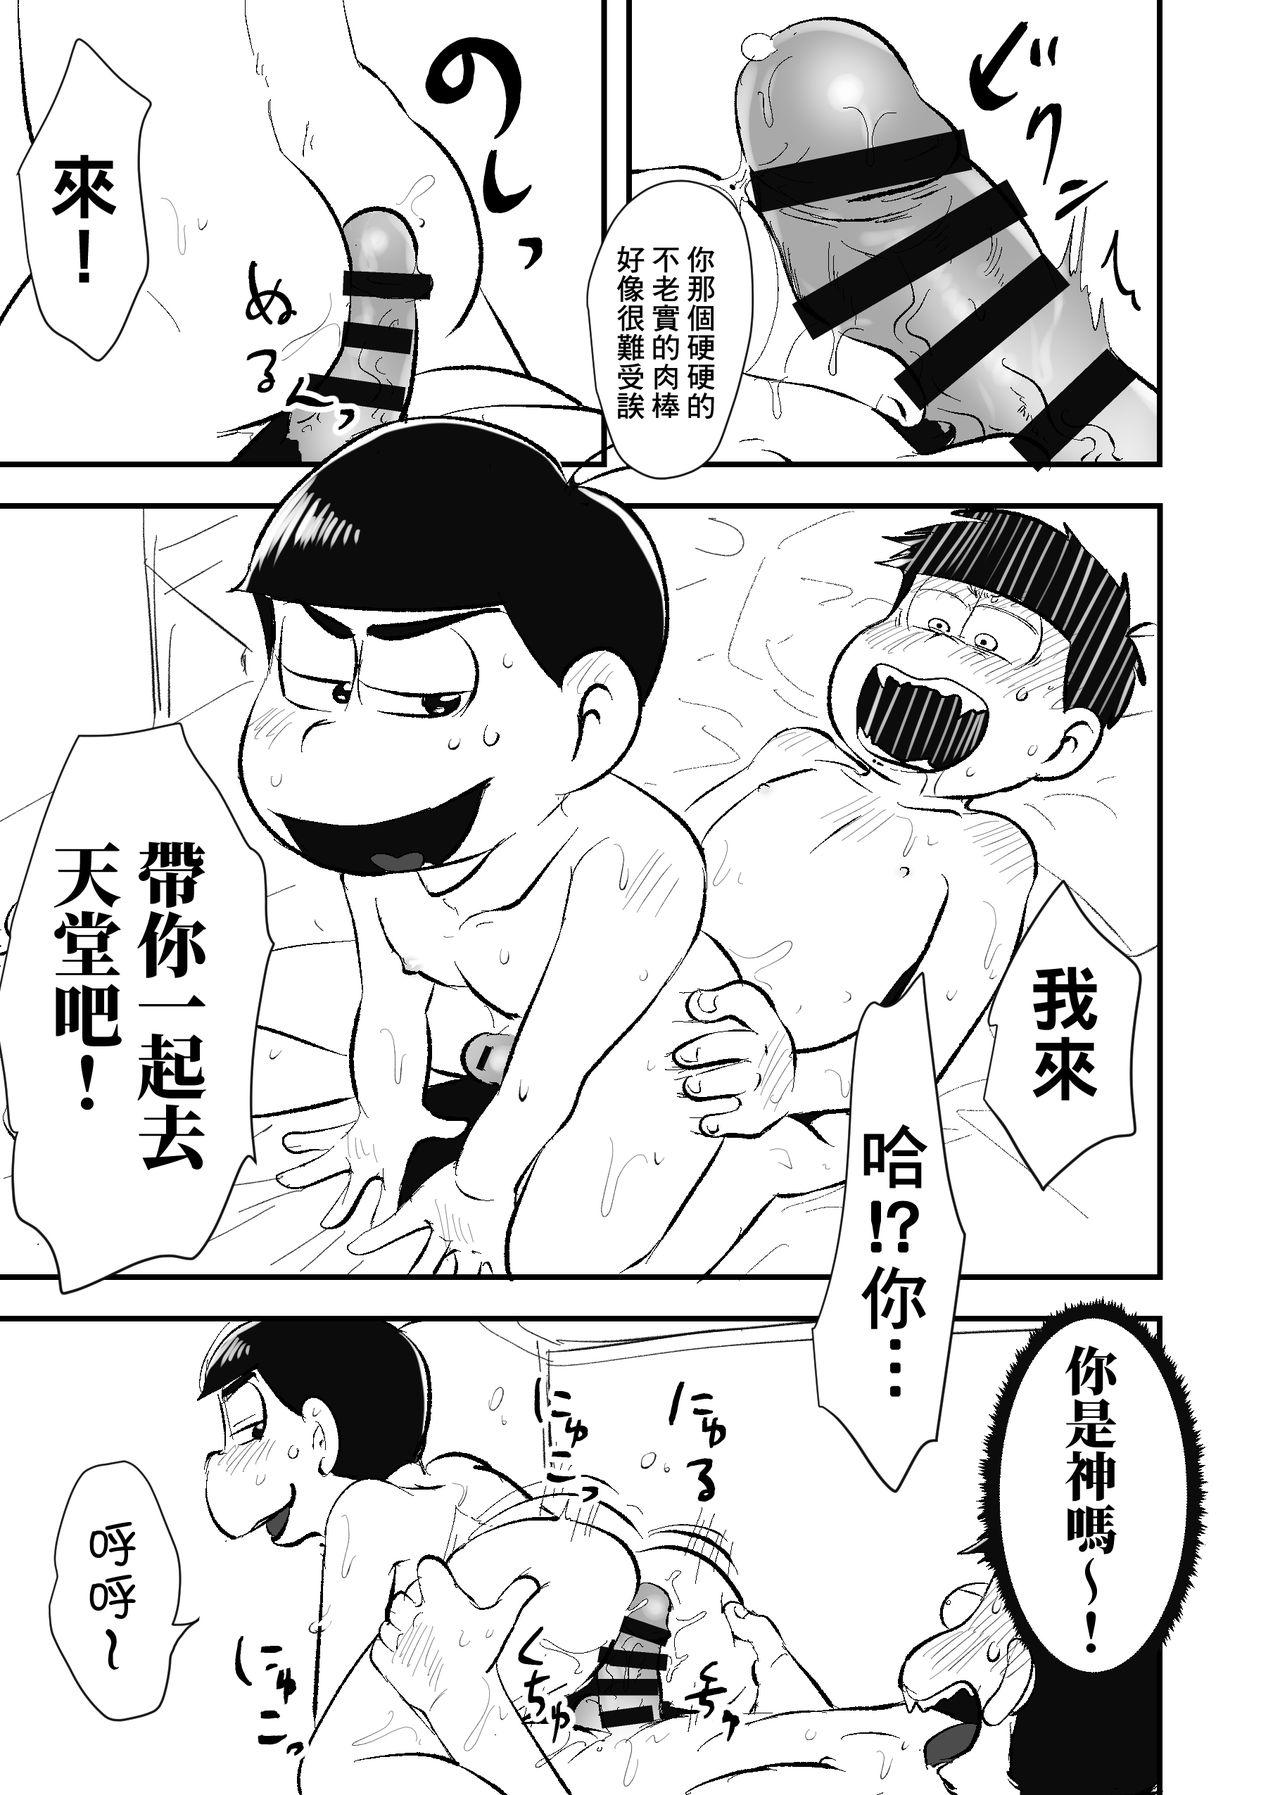 Two Zenbu Boku no Mono - Osomatsu-san Novinhas - Page 12